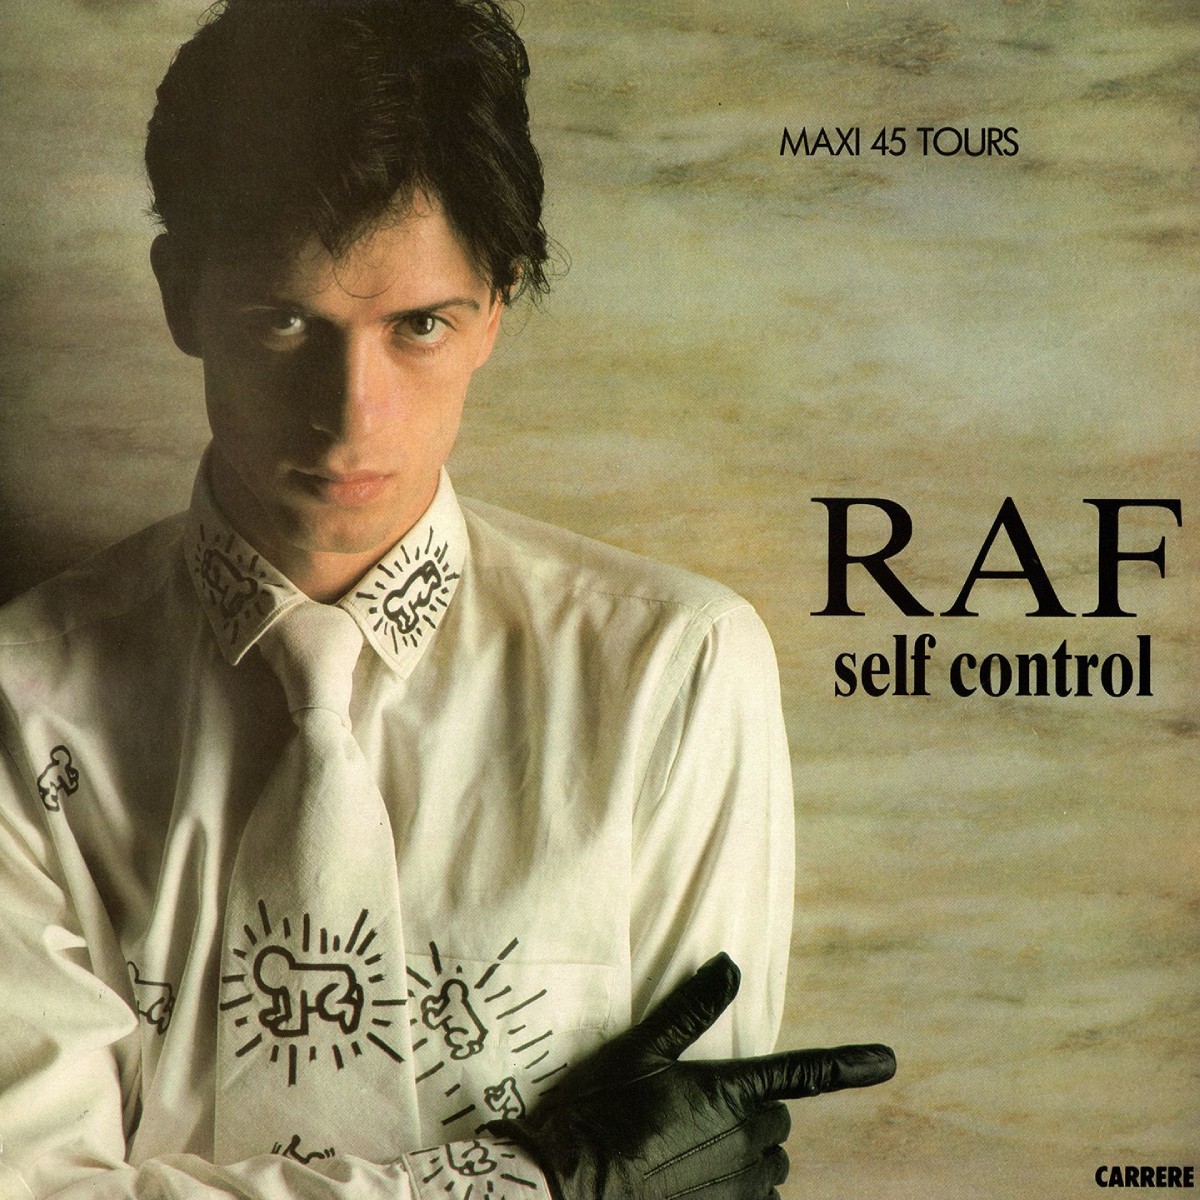 Self Control (1984), vom italienischen Künstler Rafe